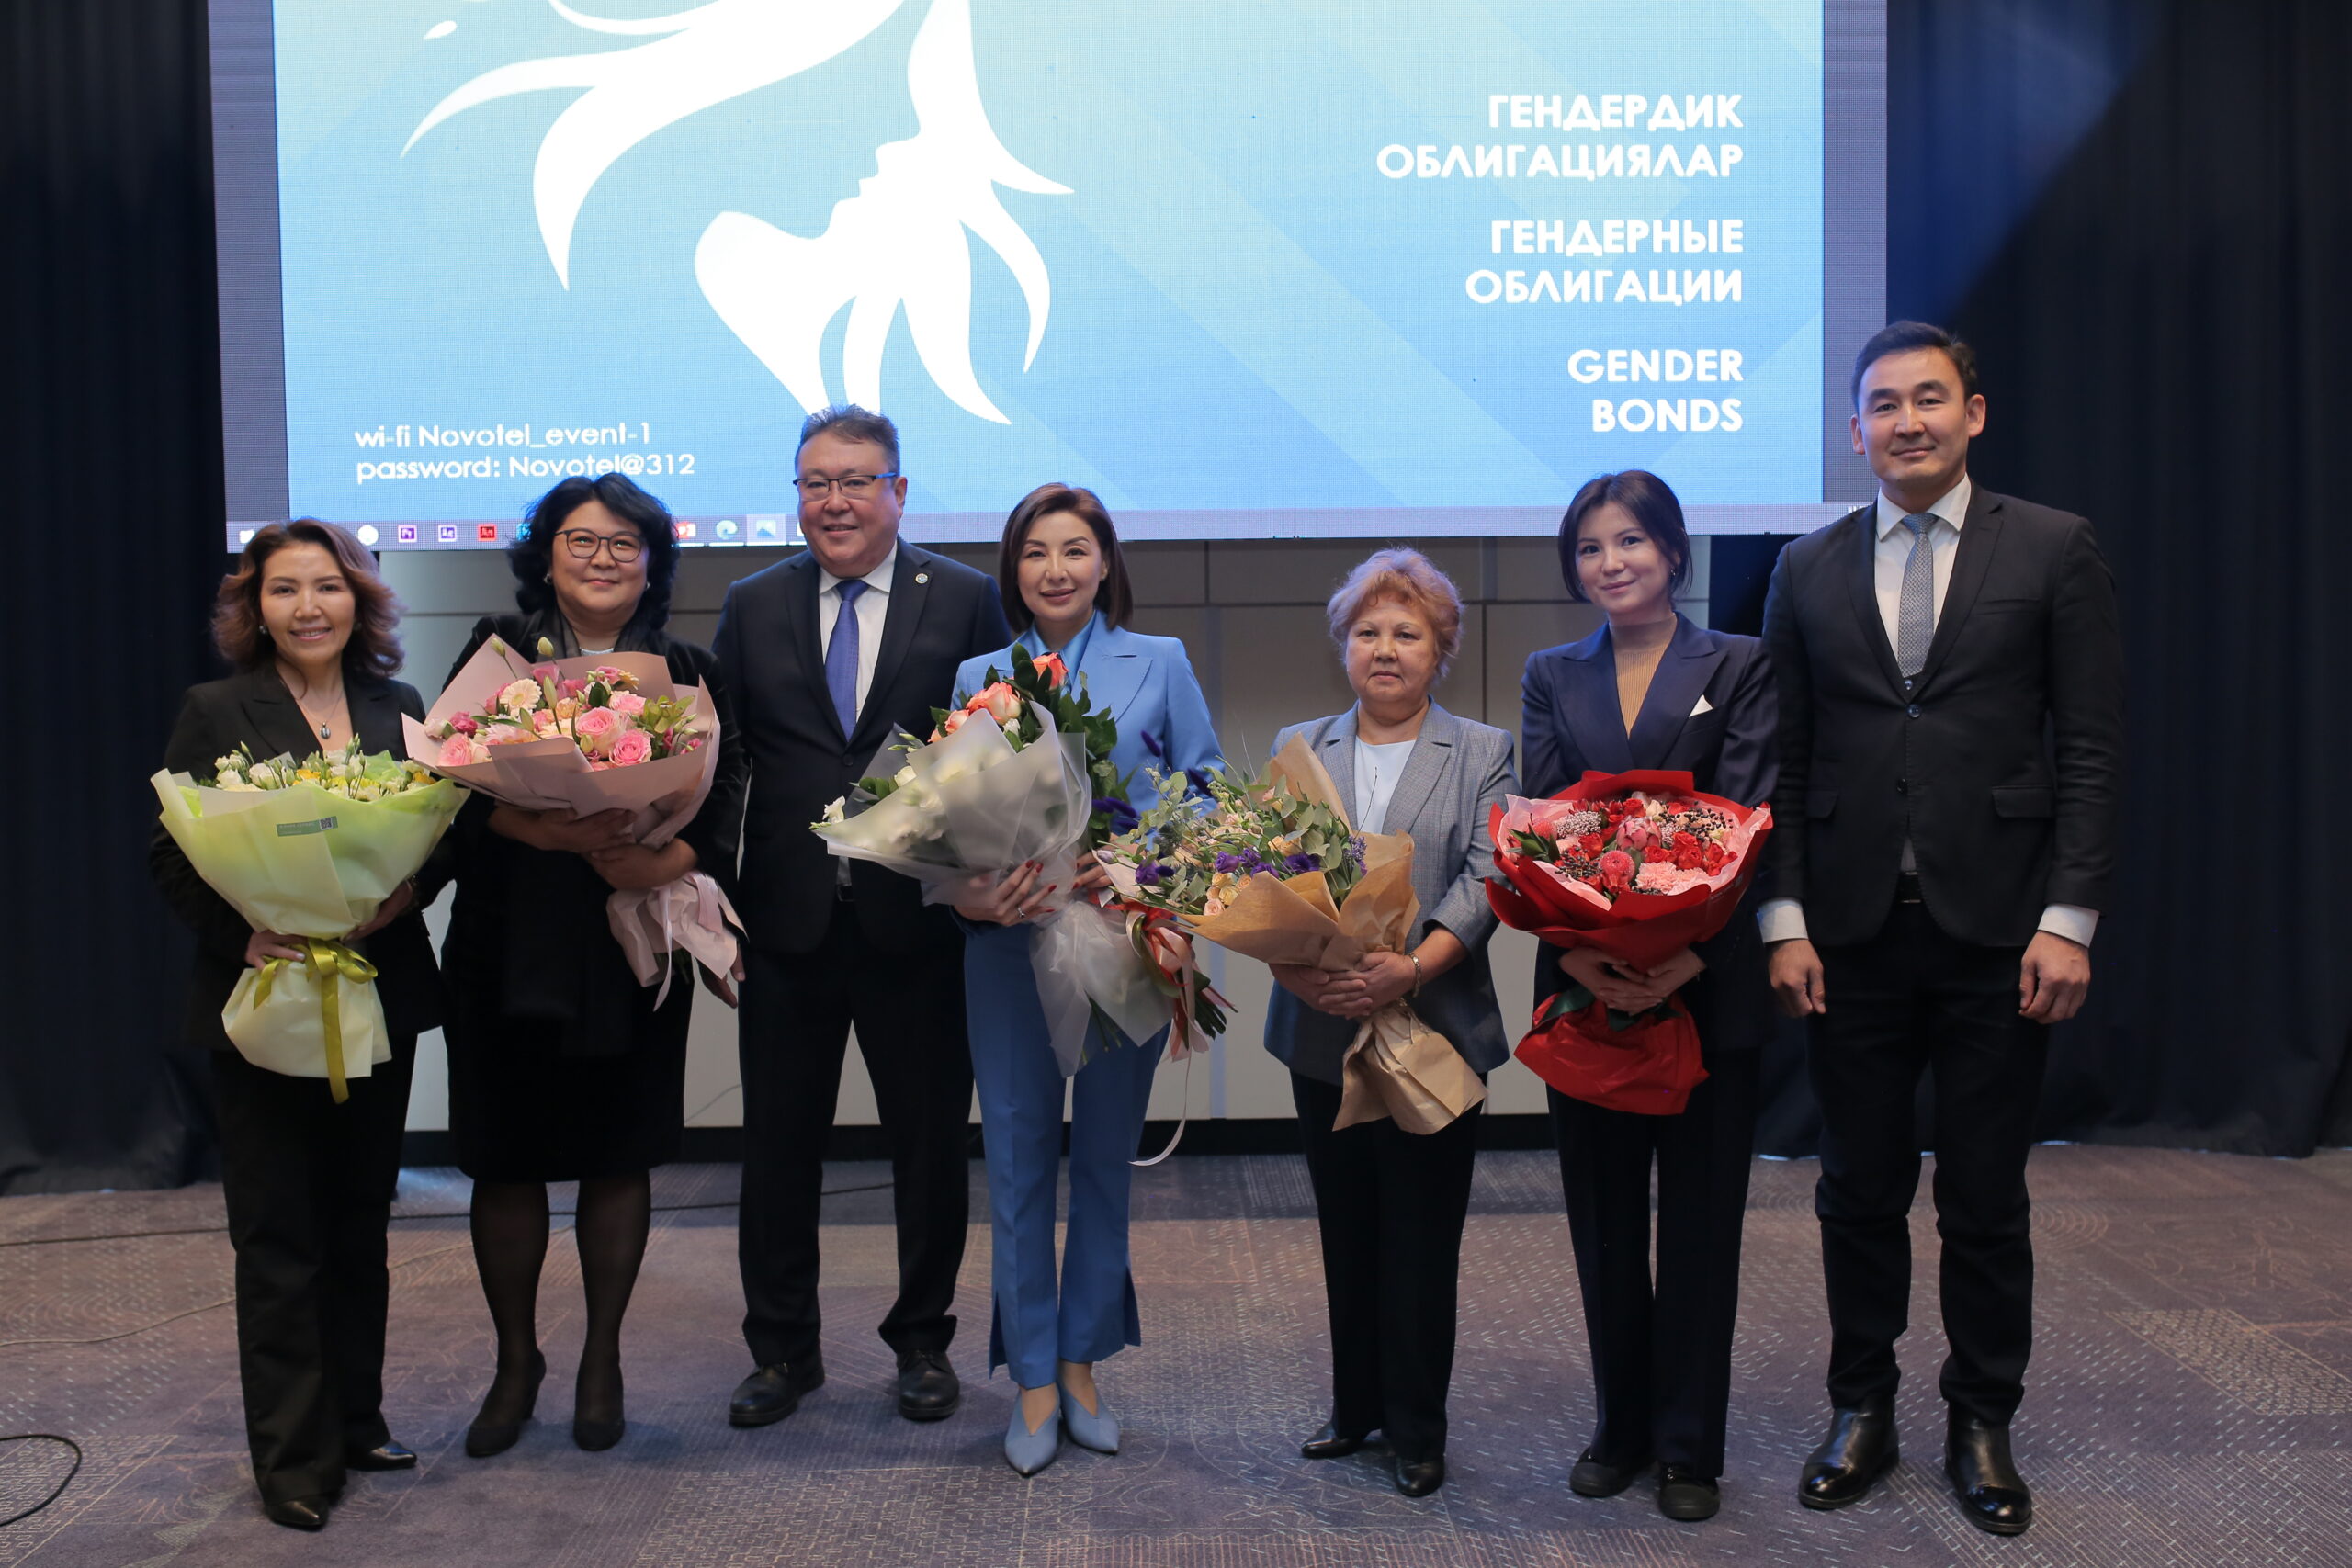  Кыргызстанда биринчи гендердик облигациялар сатыгы ишке киргизилди